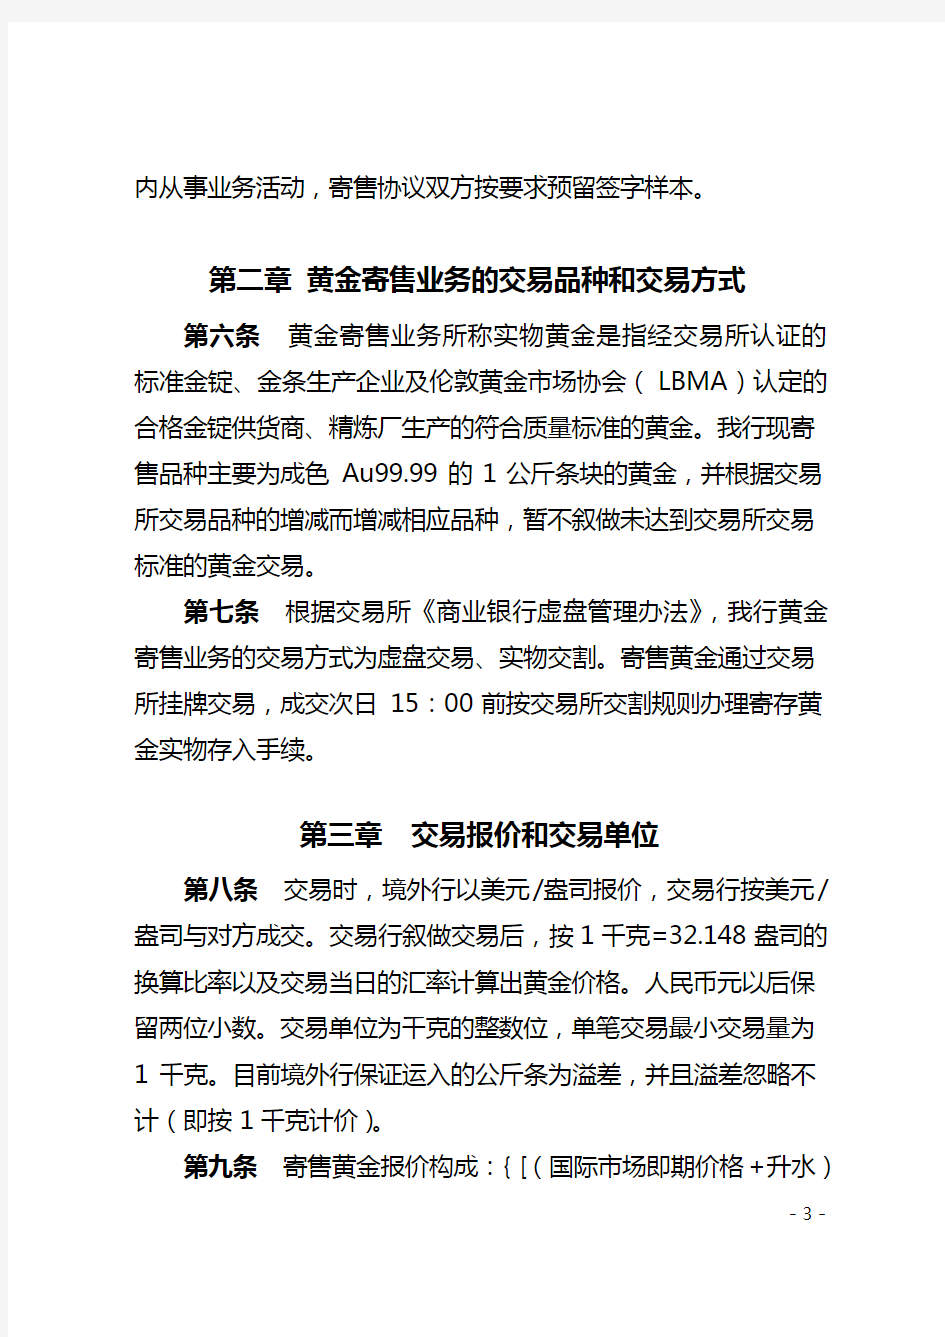 中国工商银行黄金寄售业务管理办法